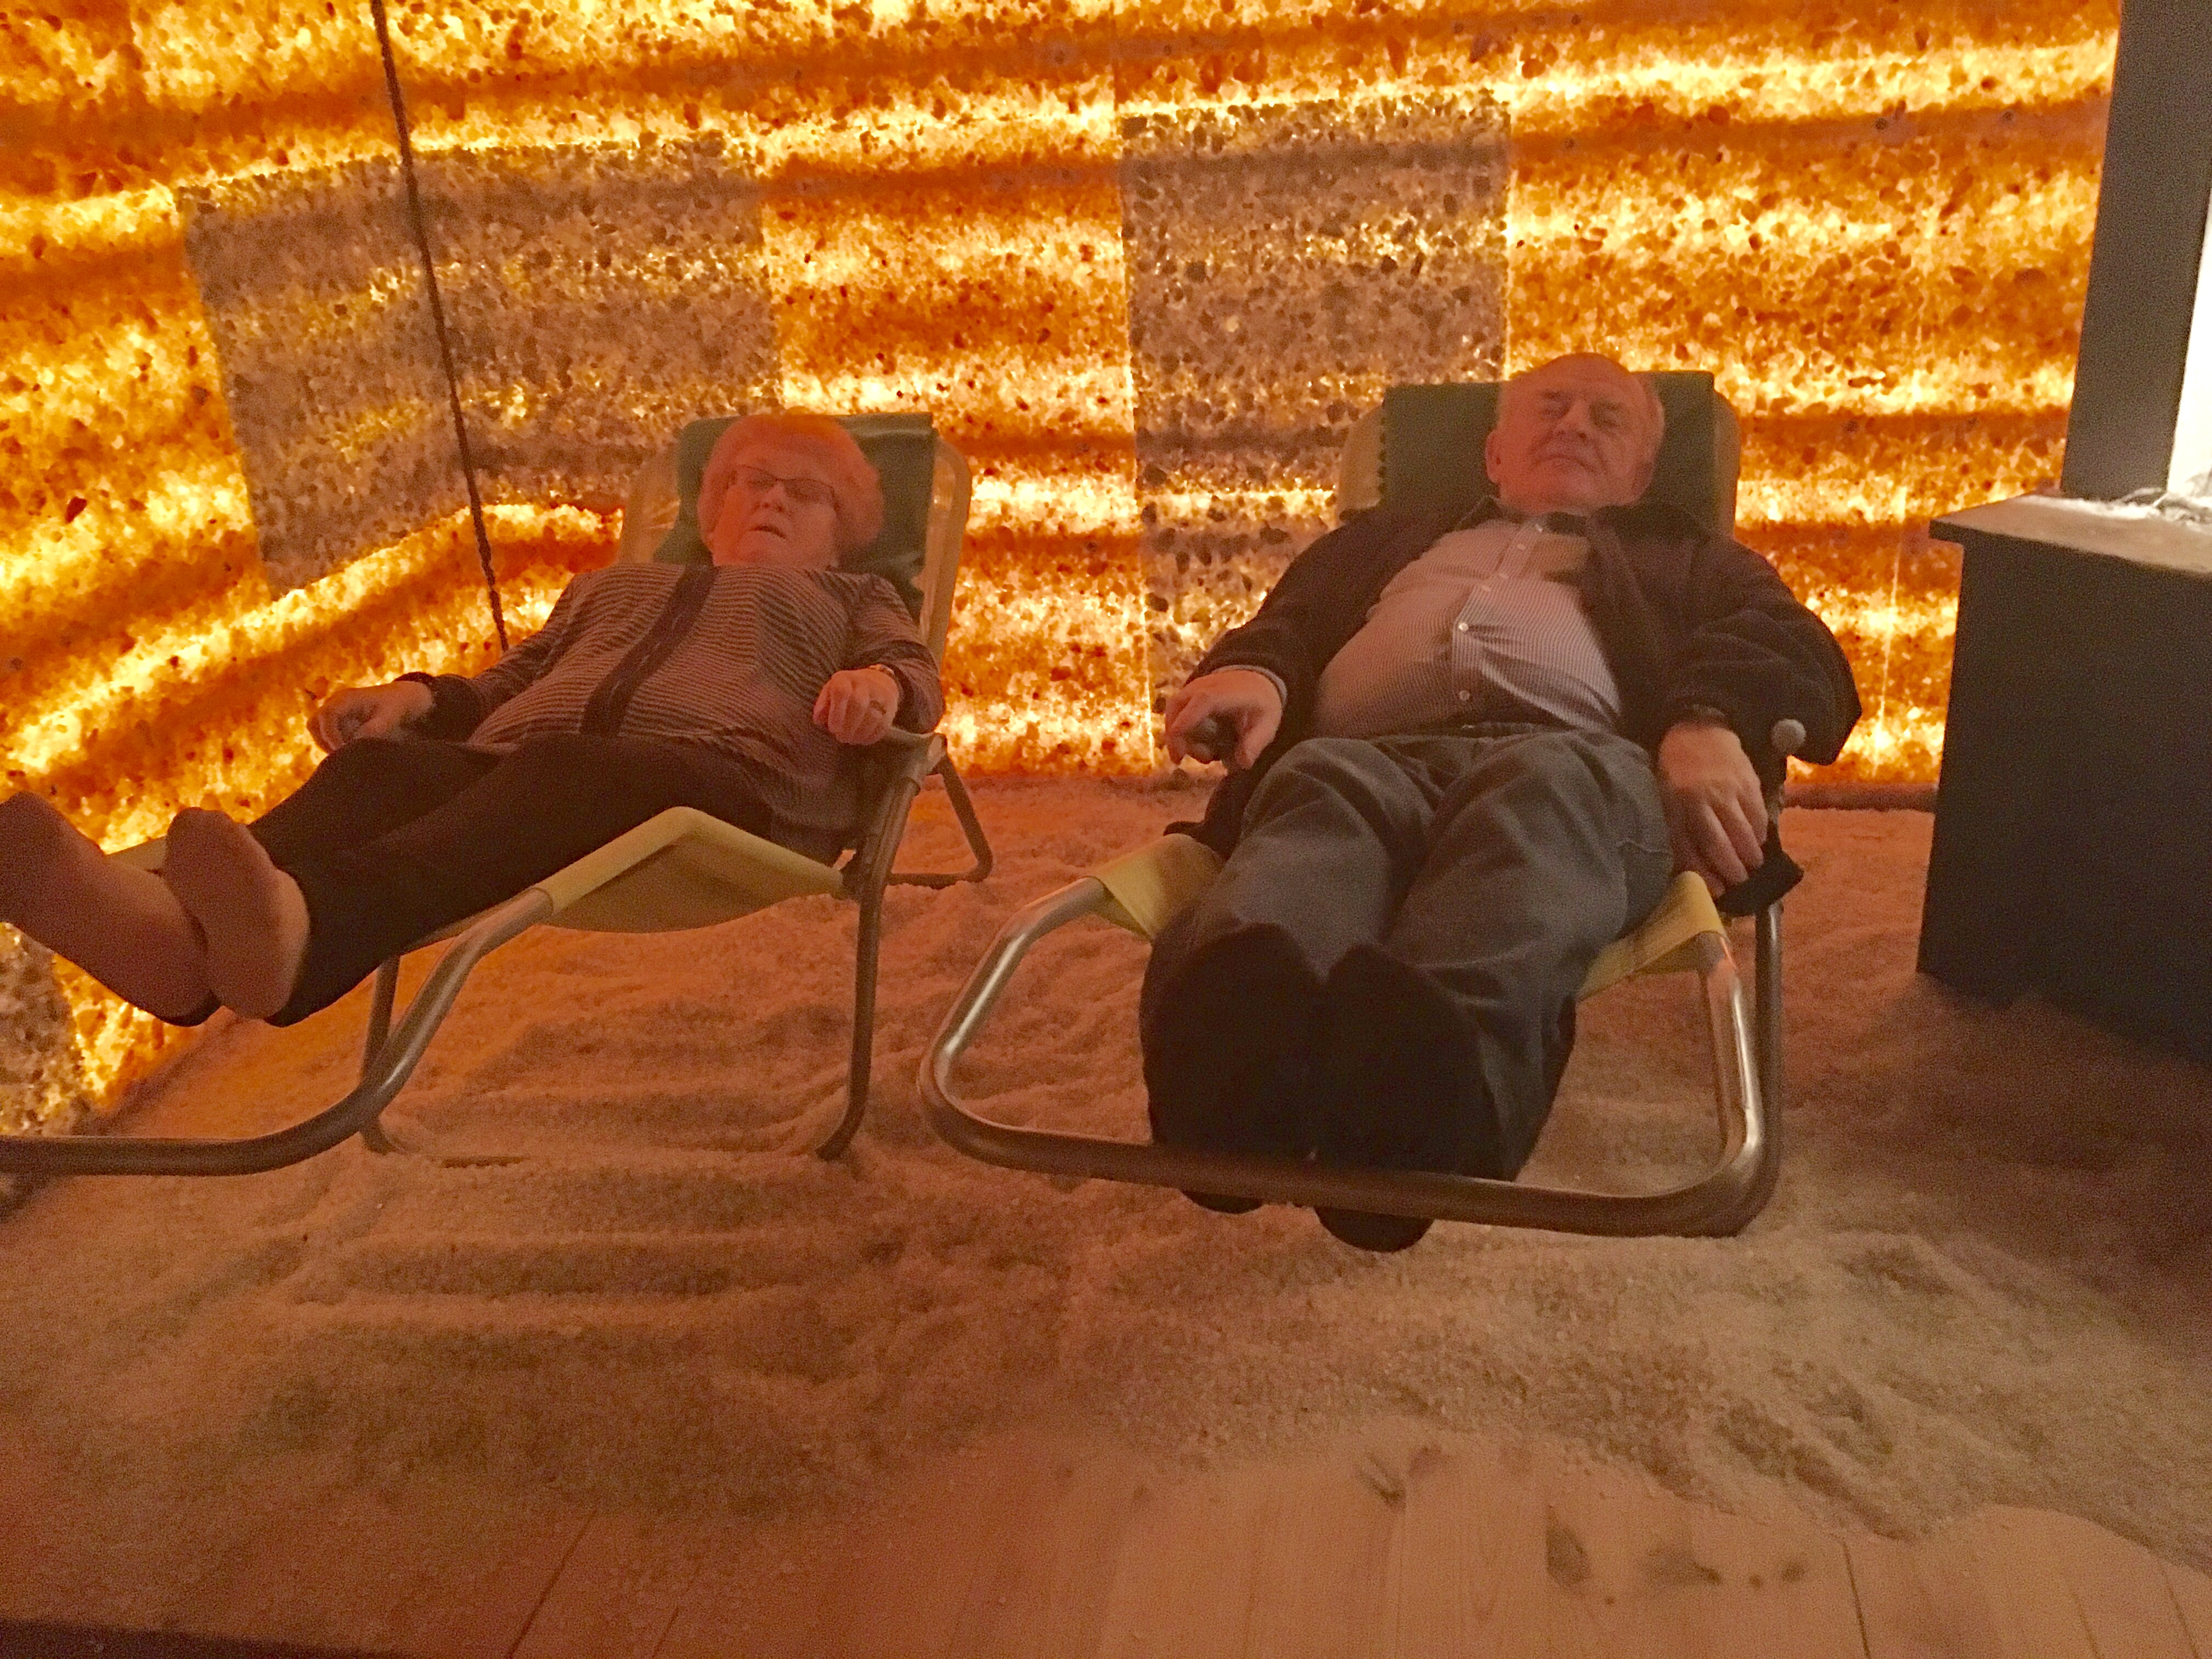 W grocie solnej – dwaj panowie relaksujący się na leżakach w grocie solnej. Pomieszczenie bez okien , ściany podświetlane w brązowo-rudej kolorystyce.